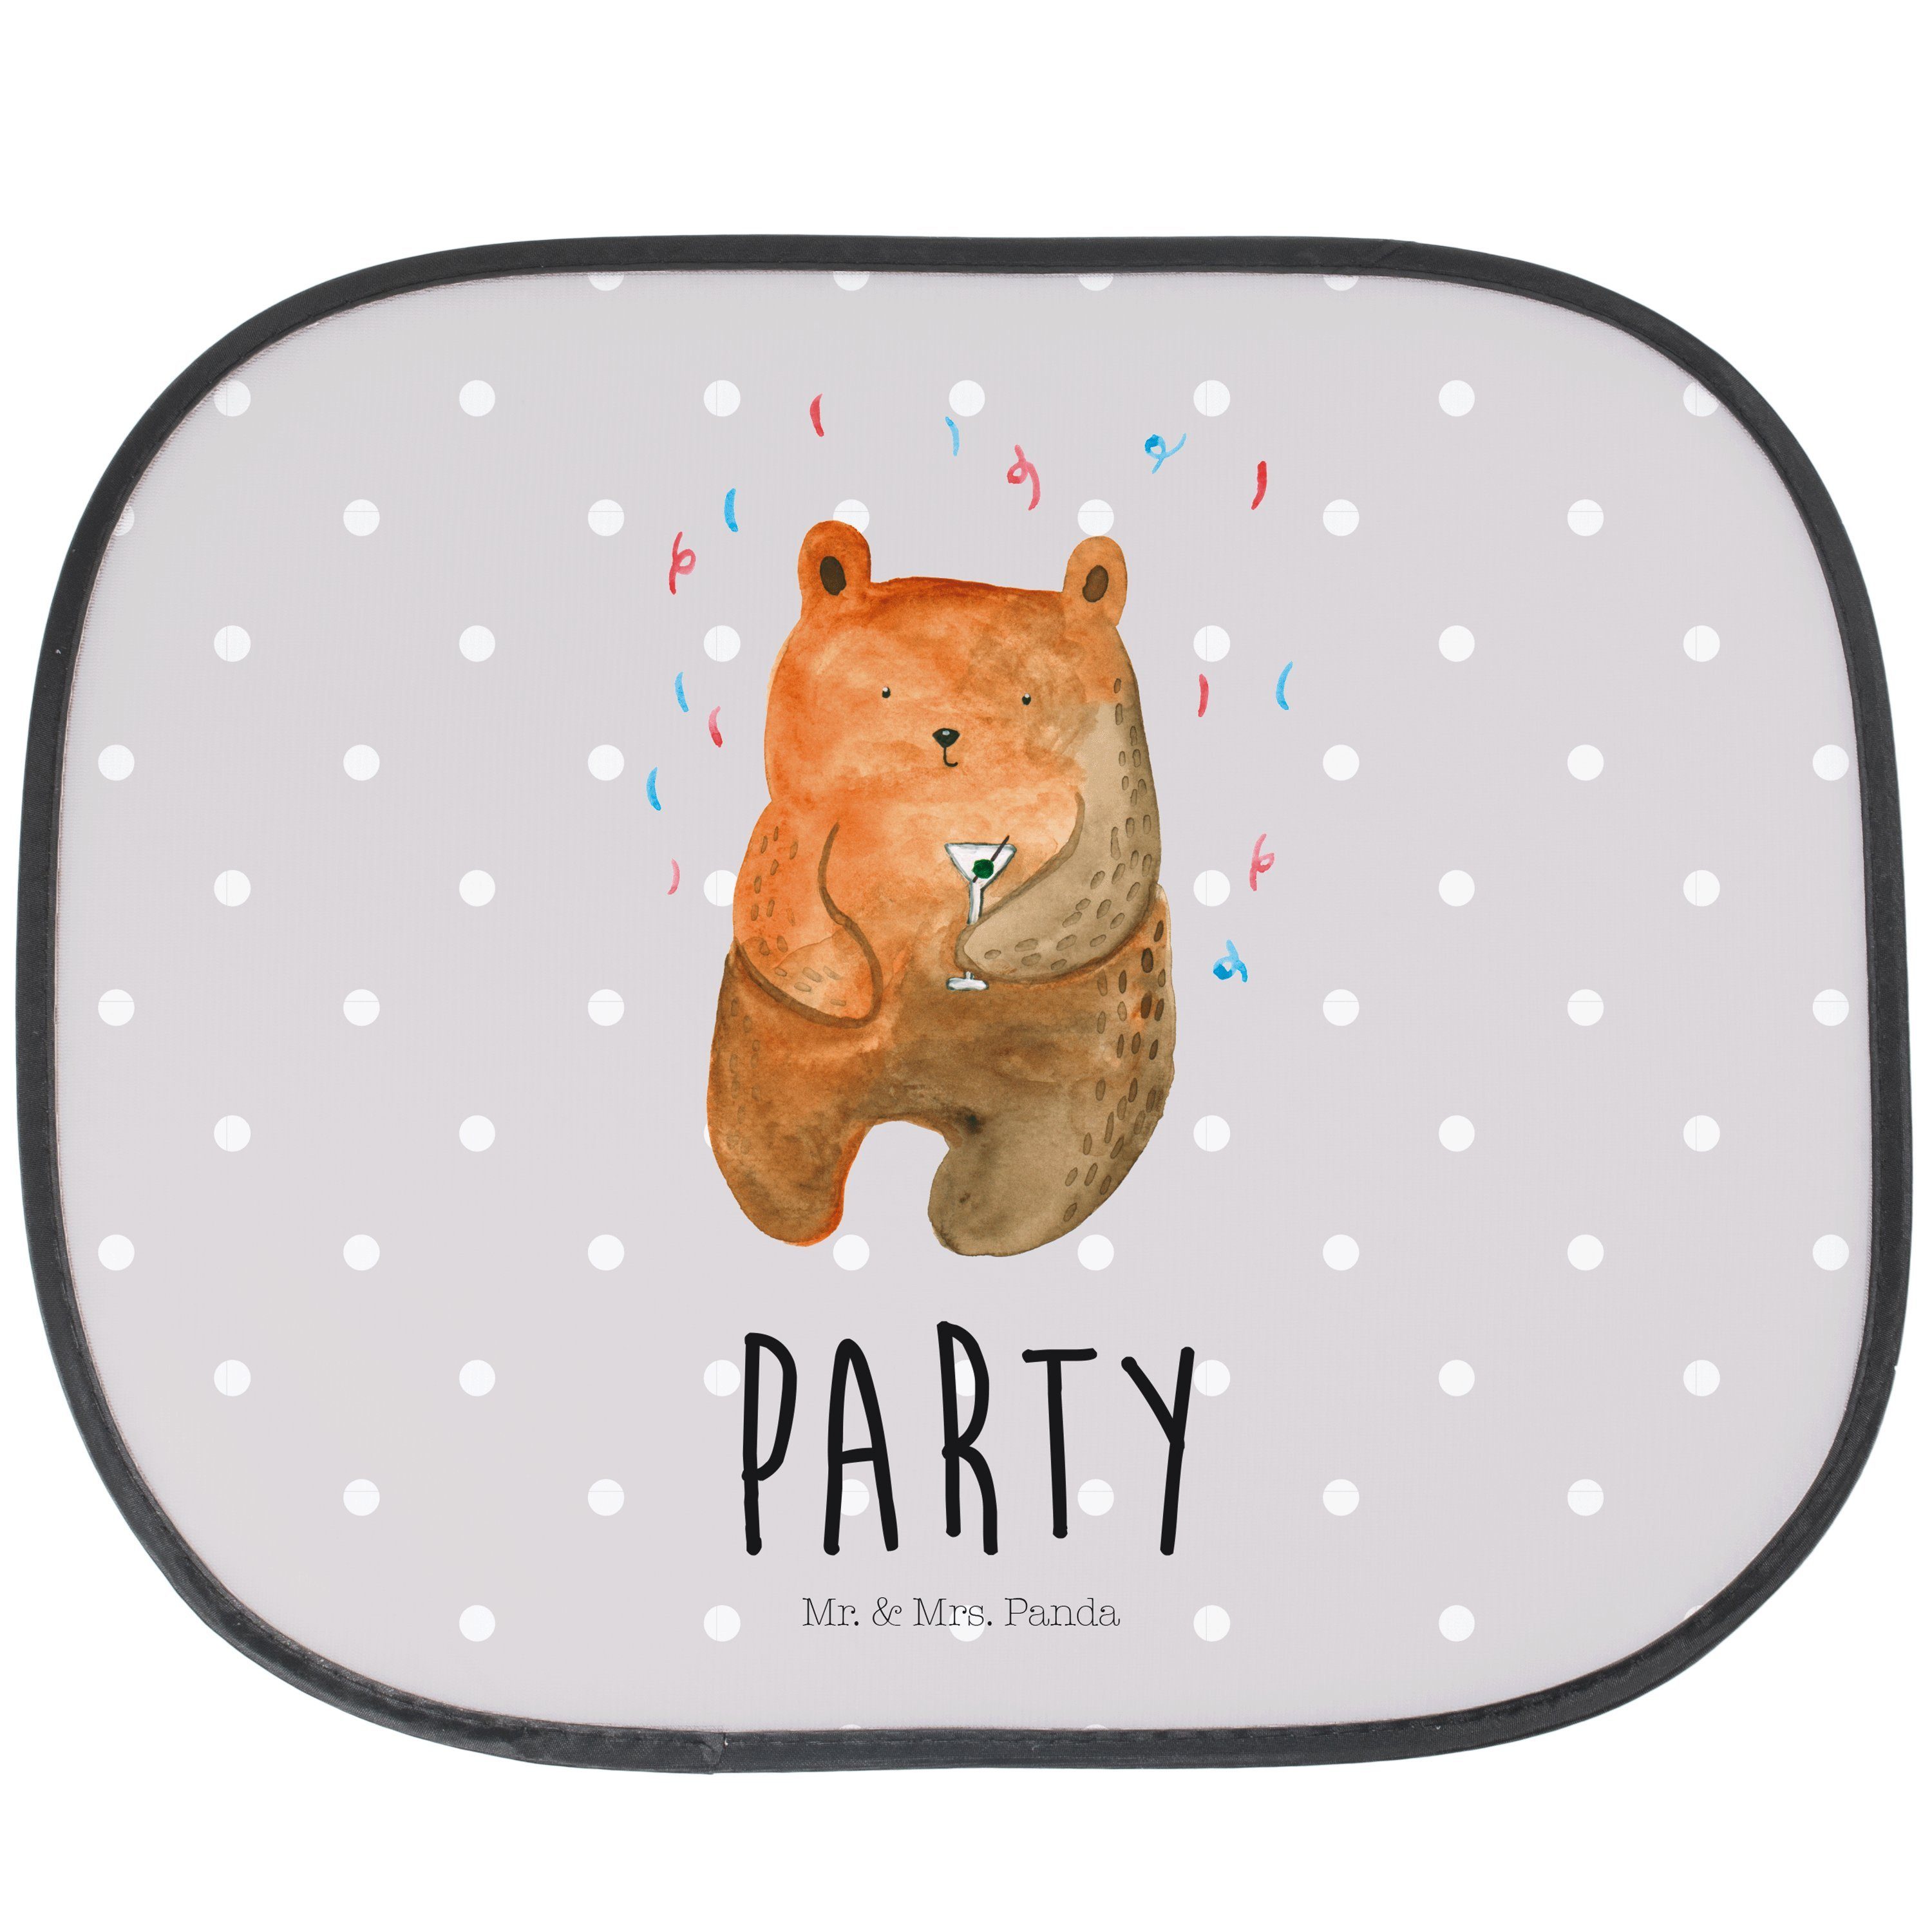 Sonnenschutz Bär Party - Grau Pastell - Geschenk, Sonnenblende, Teddybär, Gute Lau, Mr. & Mrs. Panda, Seidenmatt